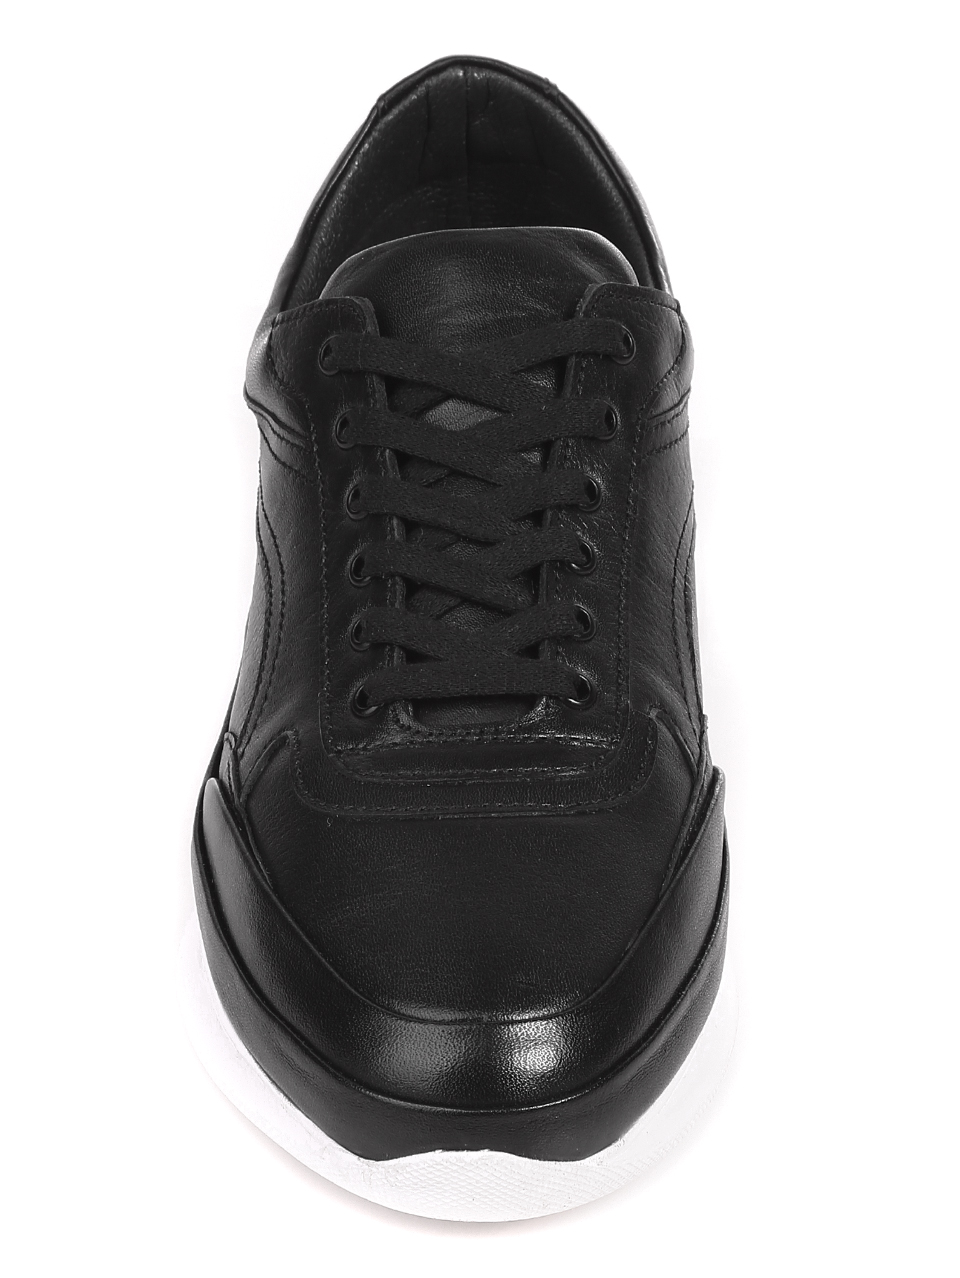 Ежедневни мъжки обувки от естествена кожа 7AT-21287 black